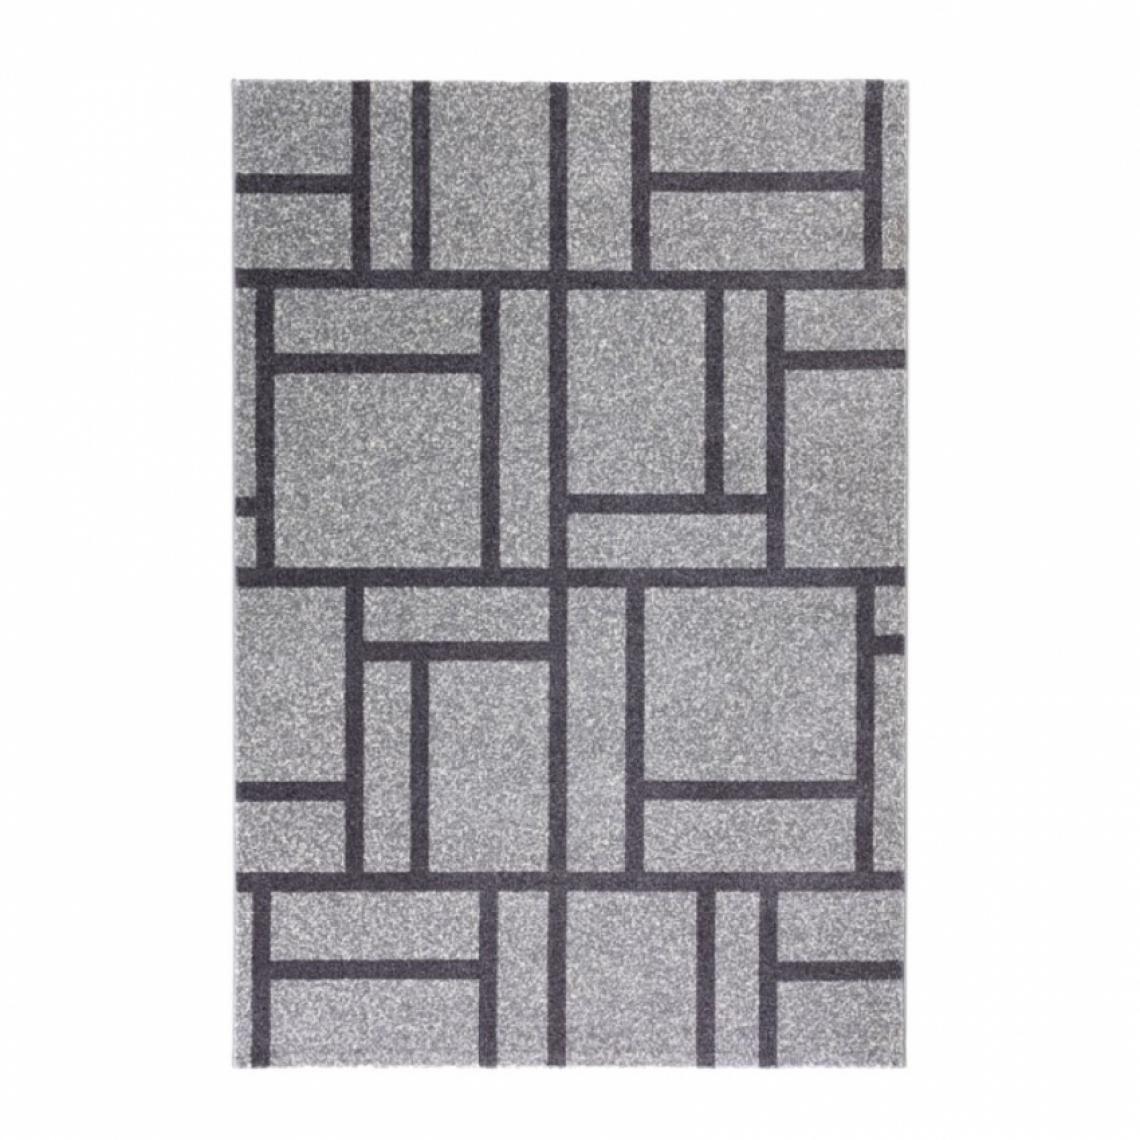 Wmd - Tapis gris noir rectangulaire design géométrique moderne Milano GRI015, Taille: 110 x 170 - Tapis